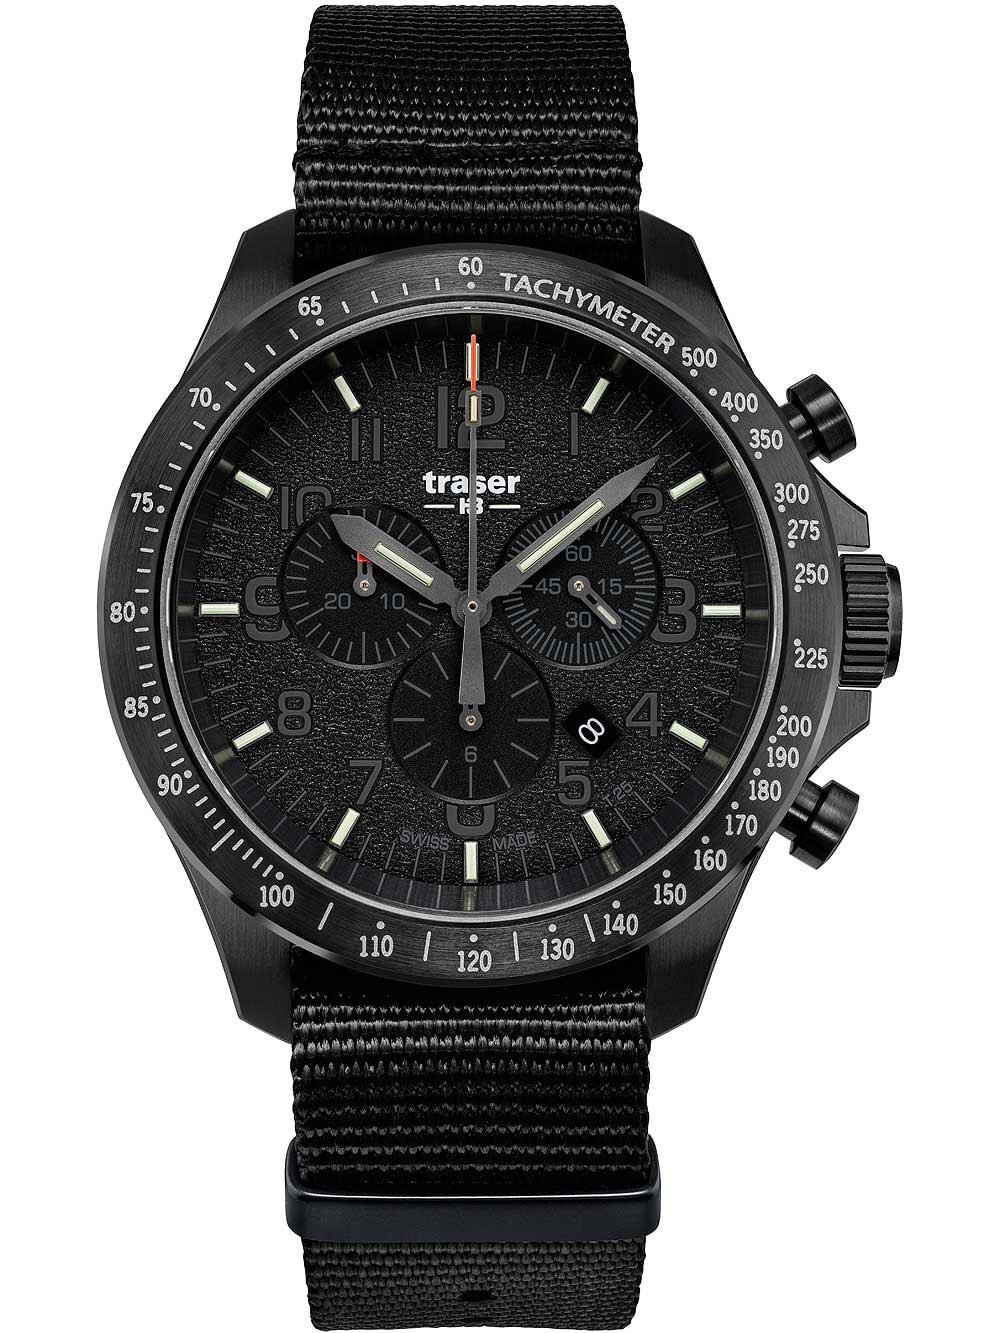 Мужские наручные часы с черным текстильным ремешком Traser H3 109465 P67 Officer chrono black nato 46mm 10ATM